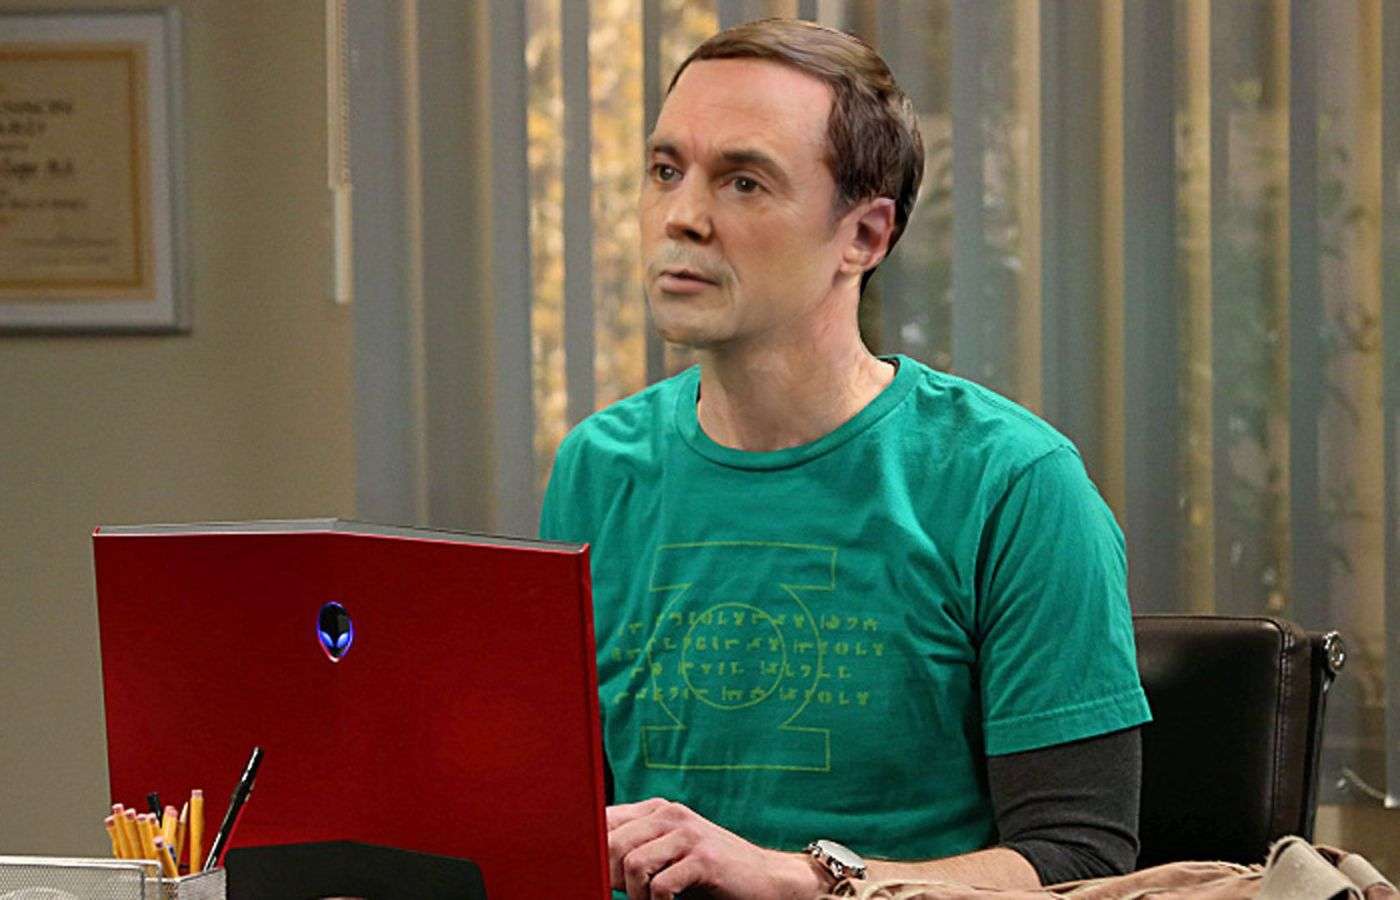 Sheldon in "Old Sheldon"